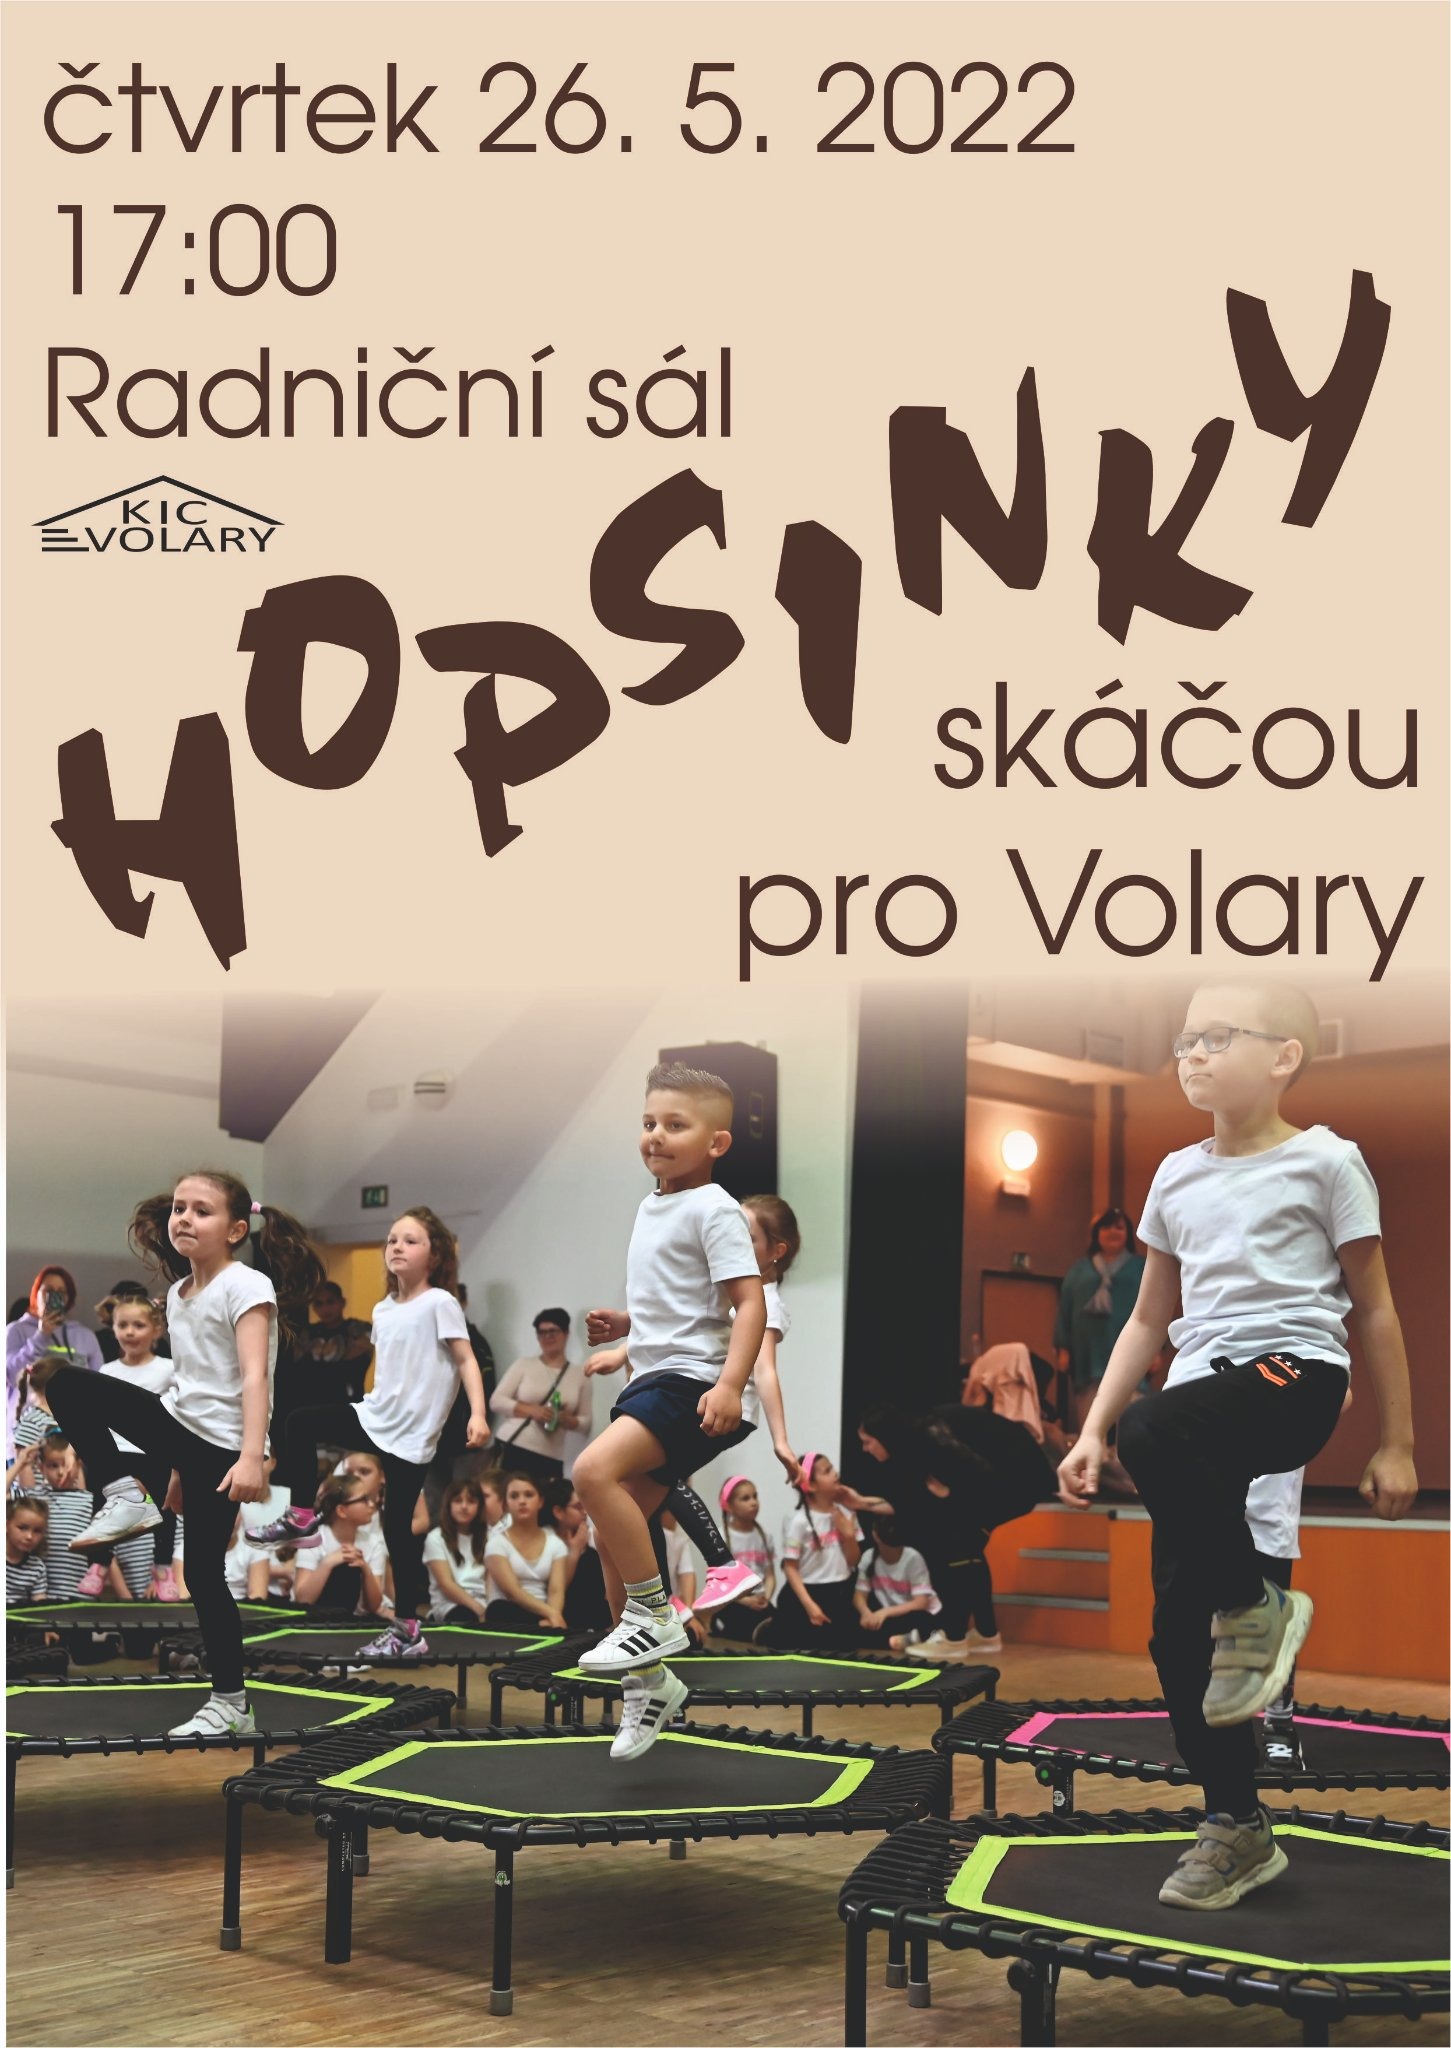 Hopsinky